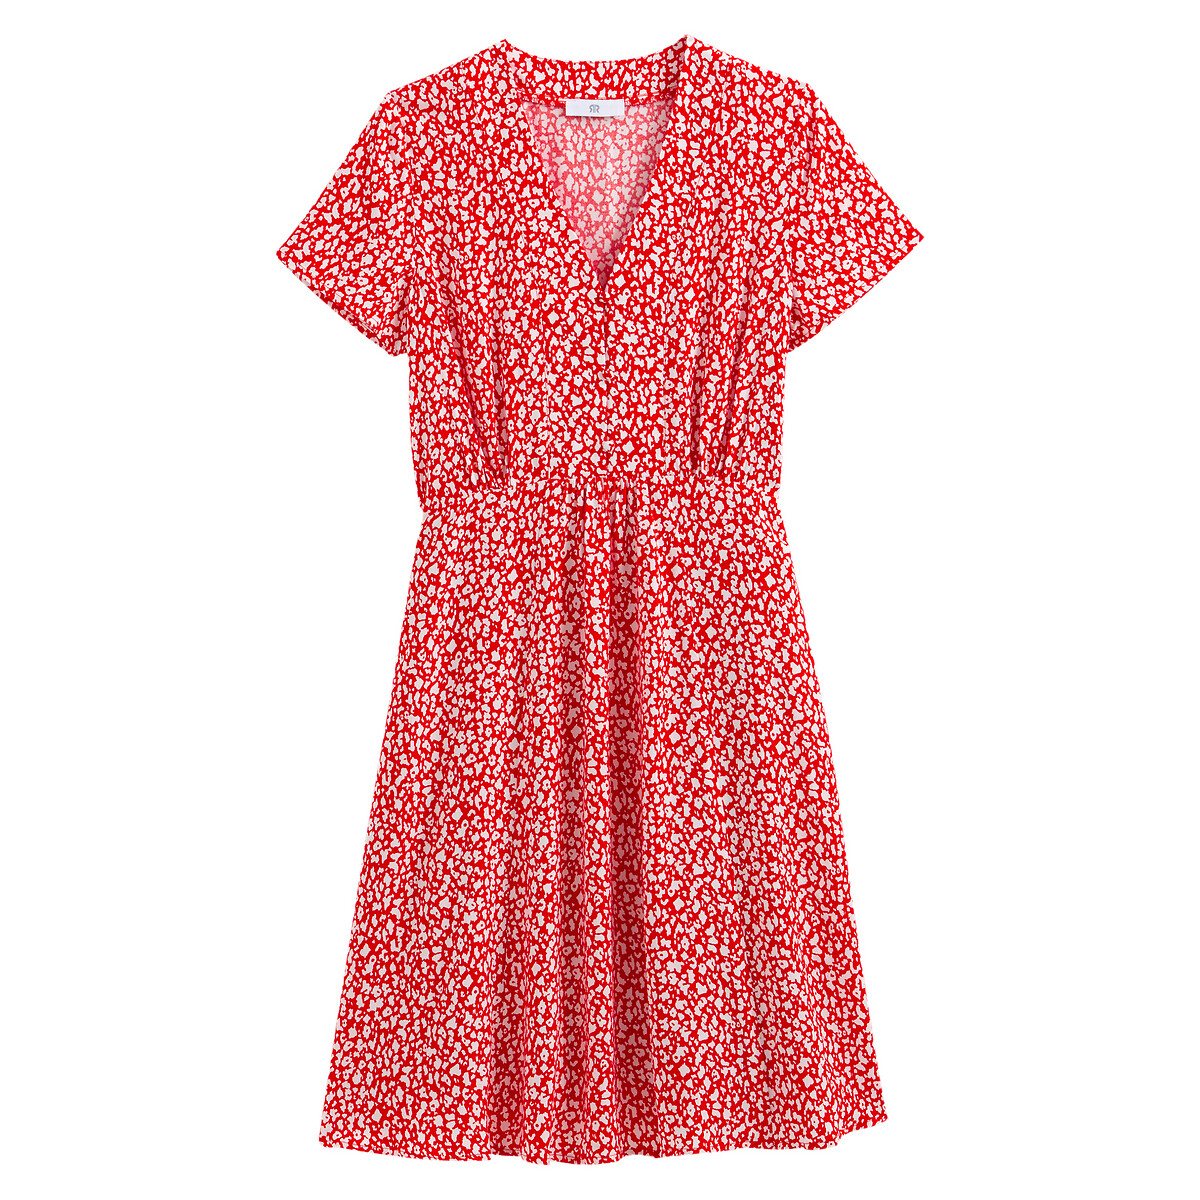 Платье LaRedoute С V-образным вырезом короткими рукавами с принтом 48 (FR) - 54 (RUS) красный, размер 48 (FR) - 54 (RUS) С V-образным вырезом короткими рукавами с принтом 48 (FR) - 54 (RUS) красный - фото 5